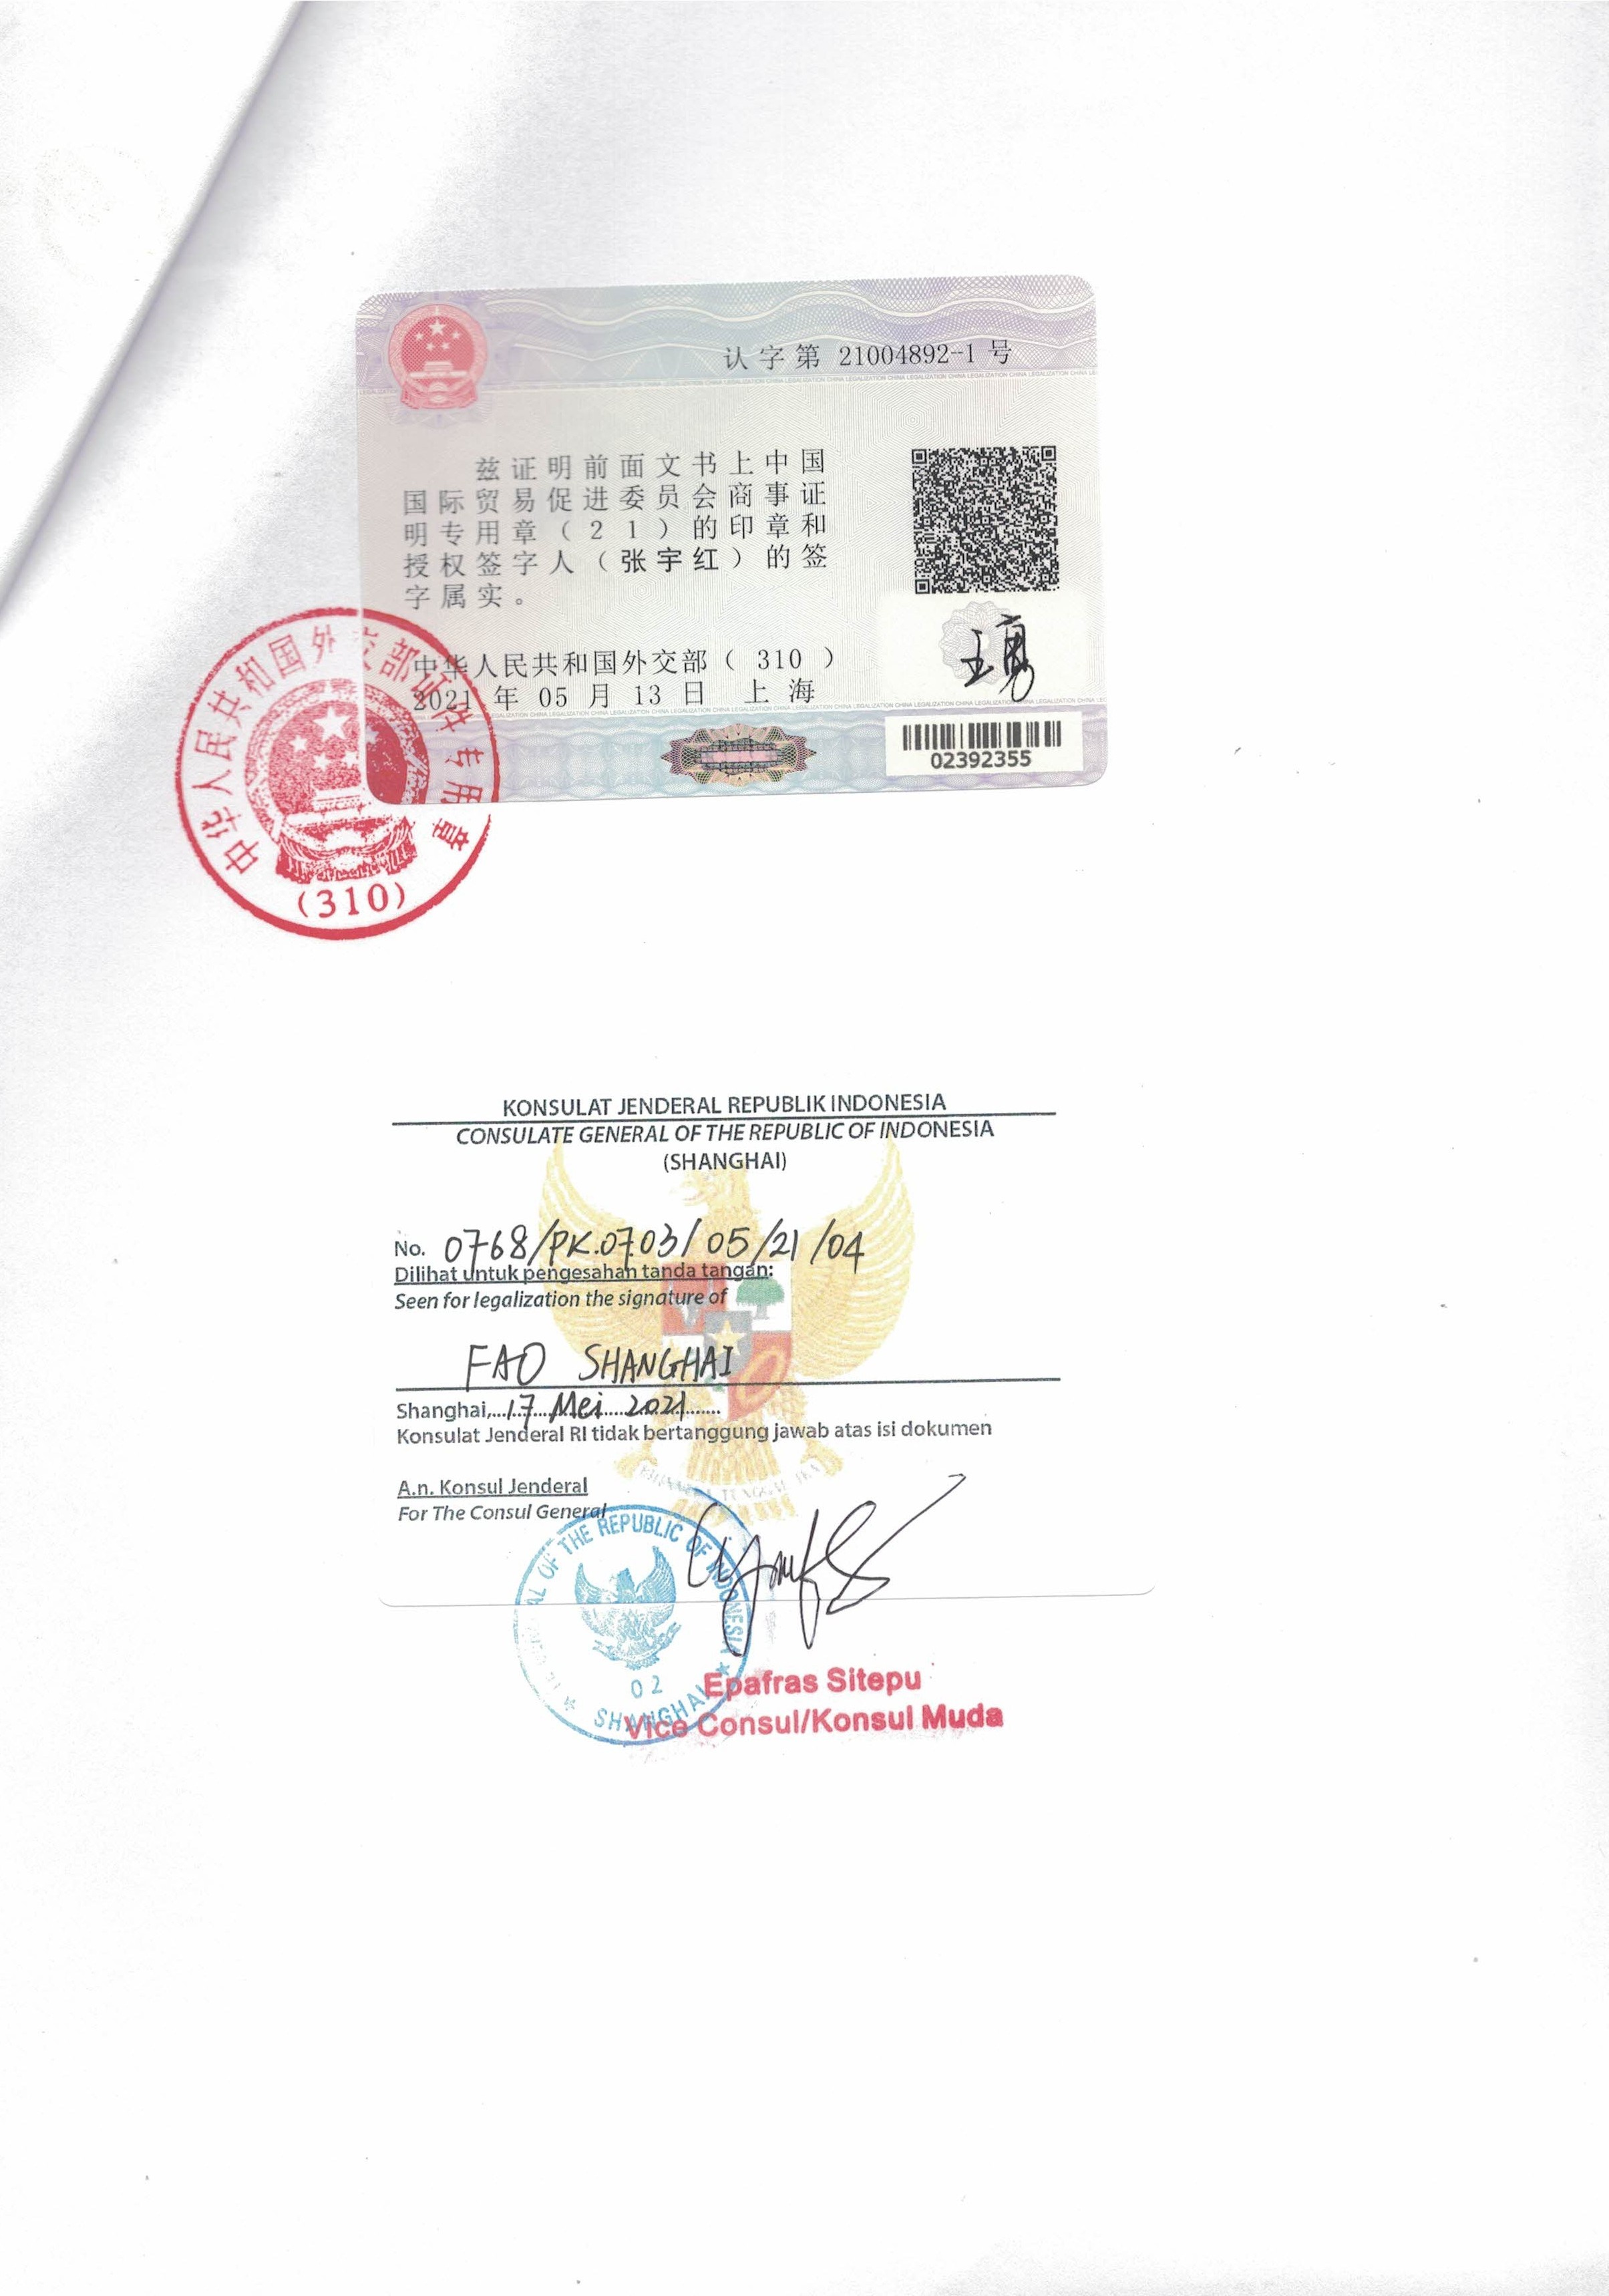 LOA授权书越南使馆认证